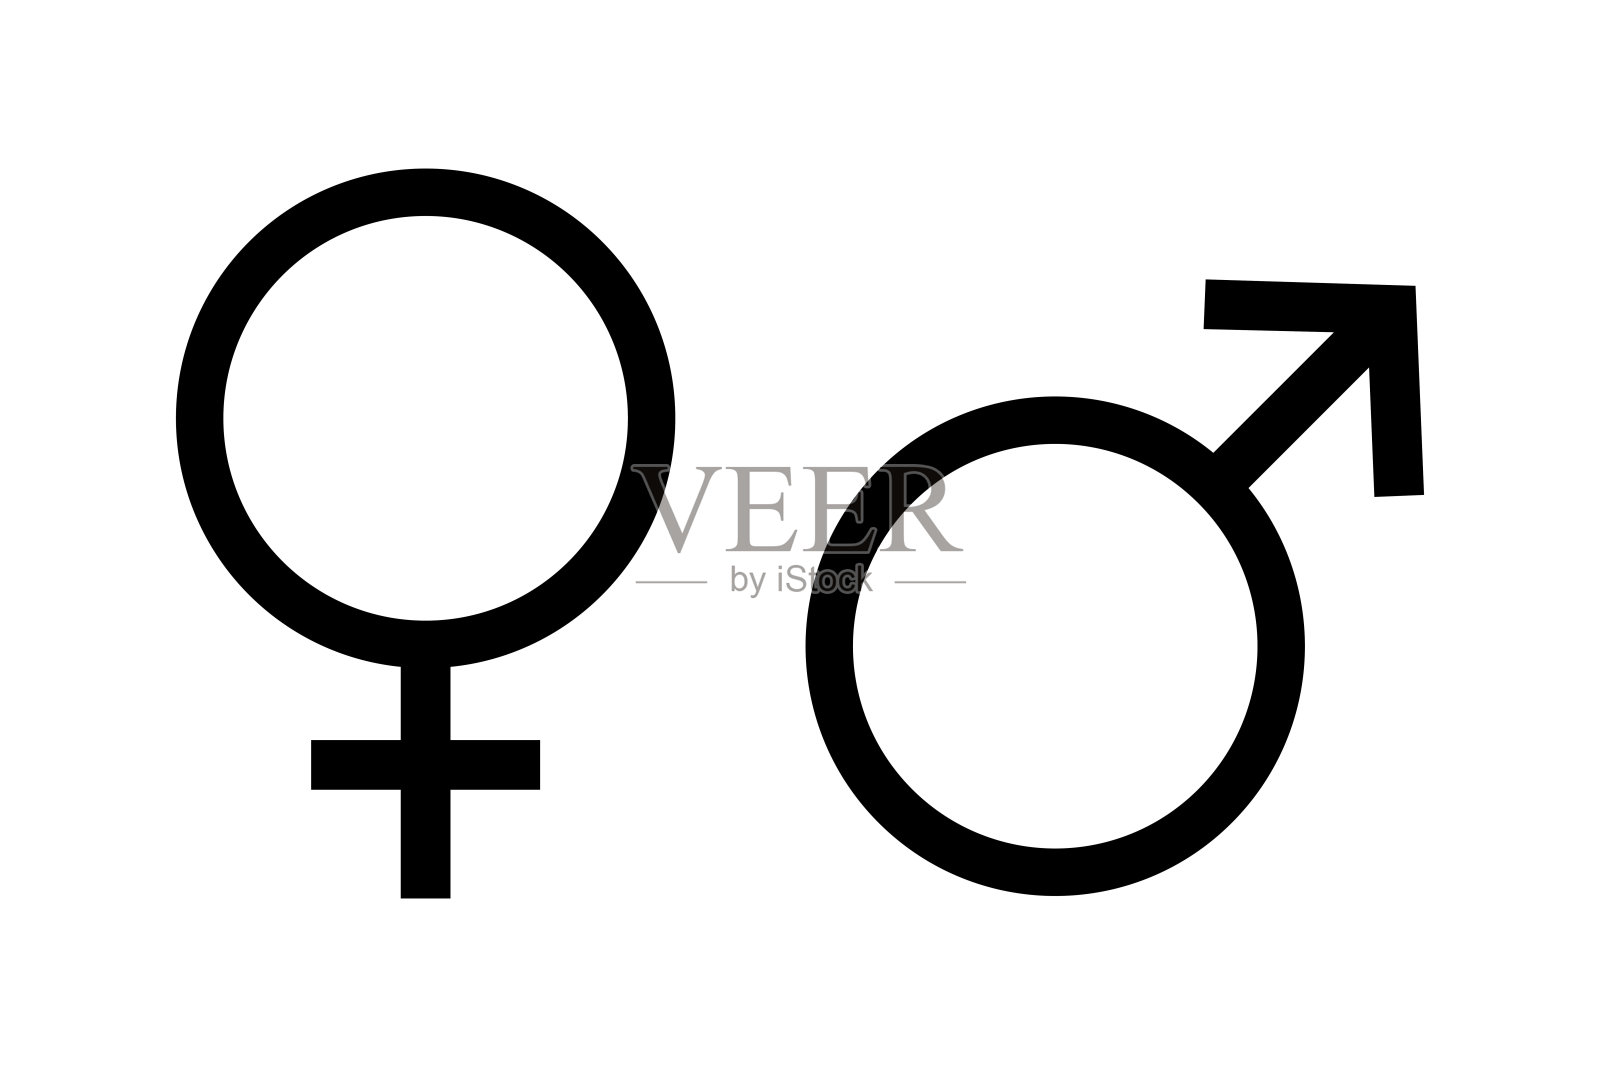 男性和女性符号 向量例证. 插画 包括有 例证, 异性爱, 概念, 粉红色, 人力, 友谊, 关系, 婚姻 - 42238892